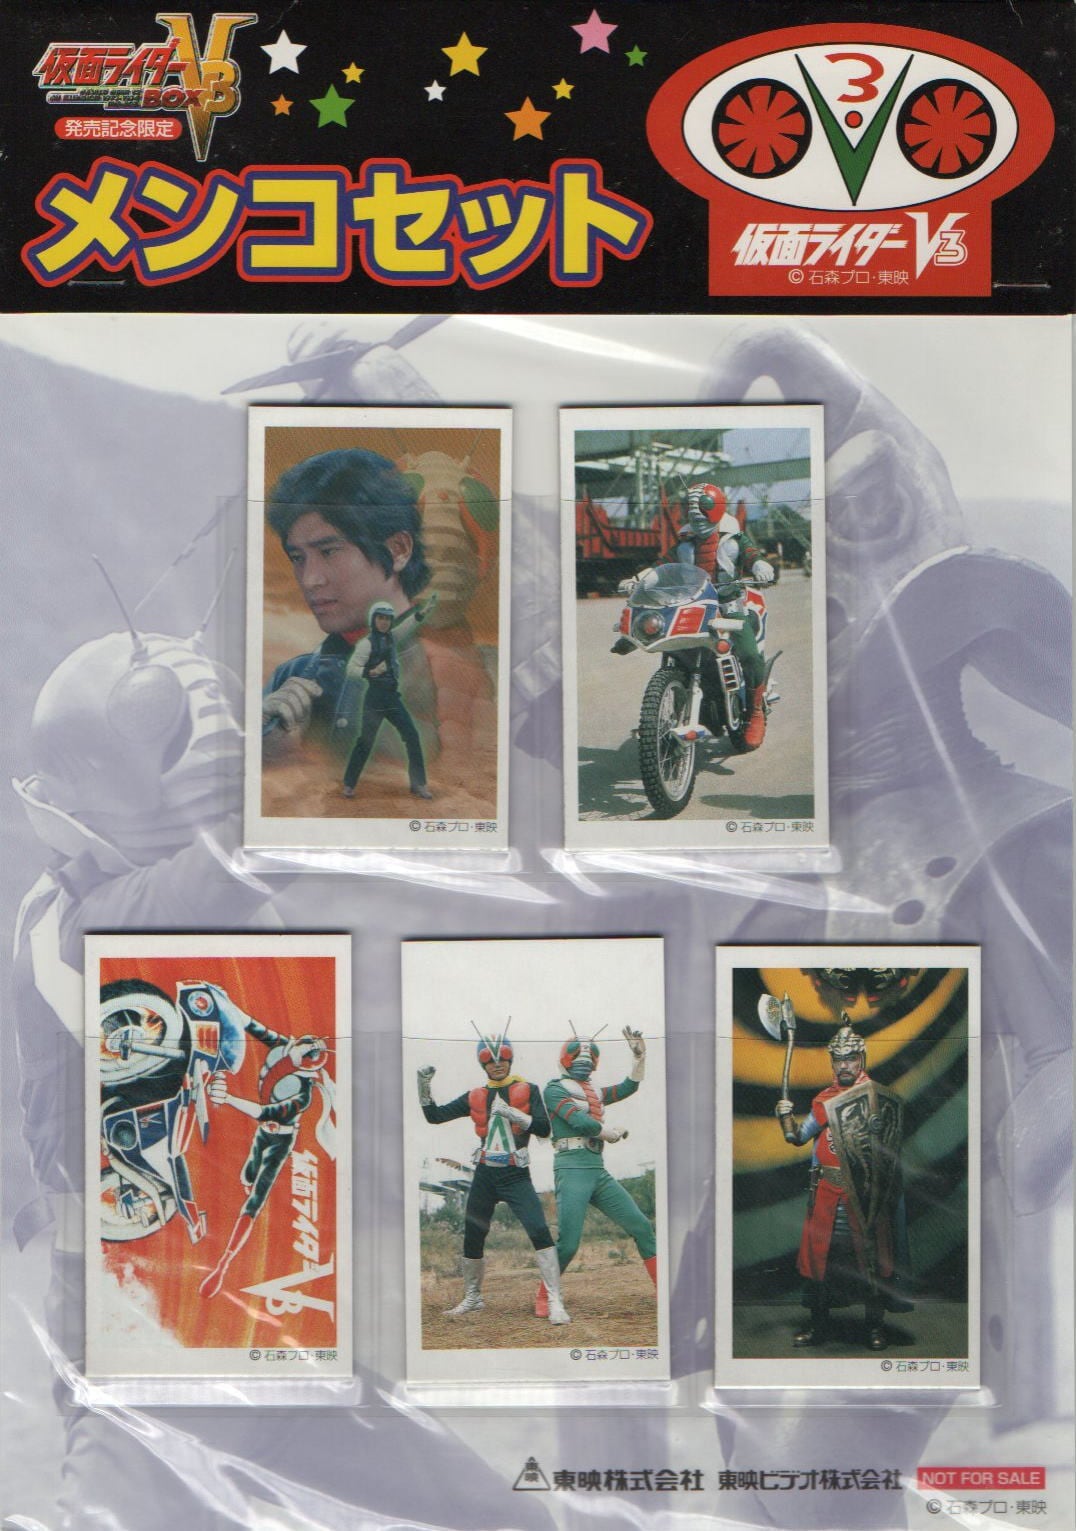 仮面ライダーV3 BOX [DVD] cm3dmju www.krzysztofbialy.com